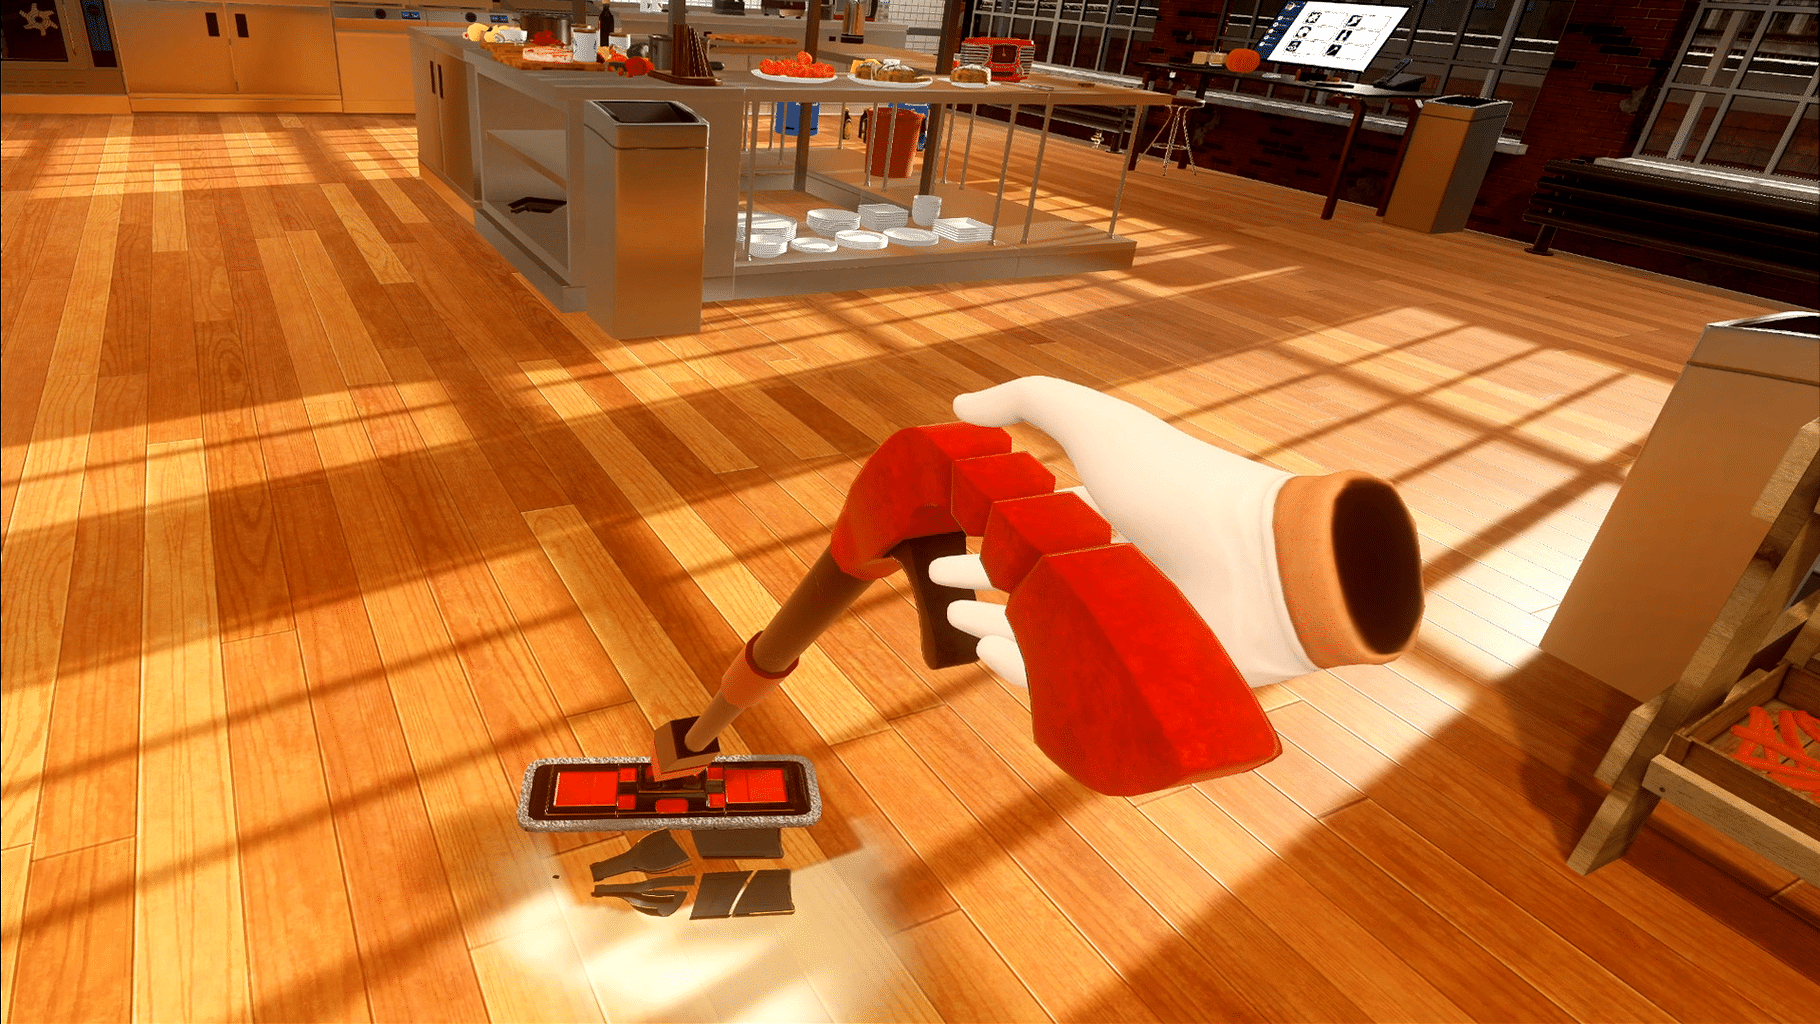 Cooking Simulator VR screenshot